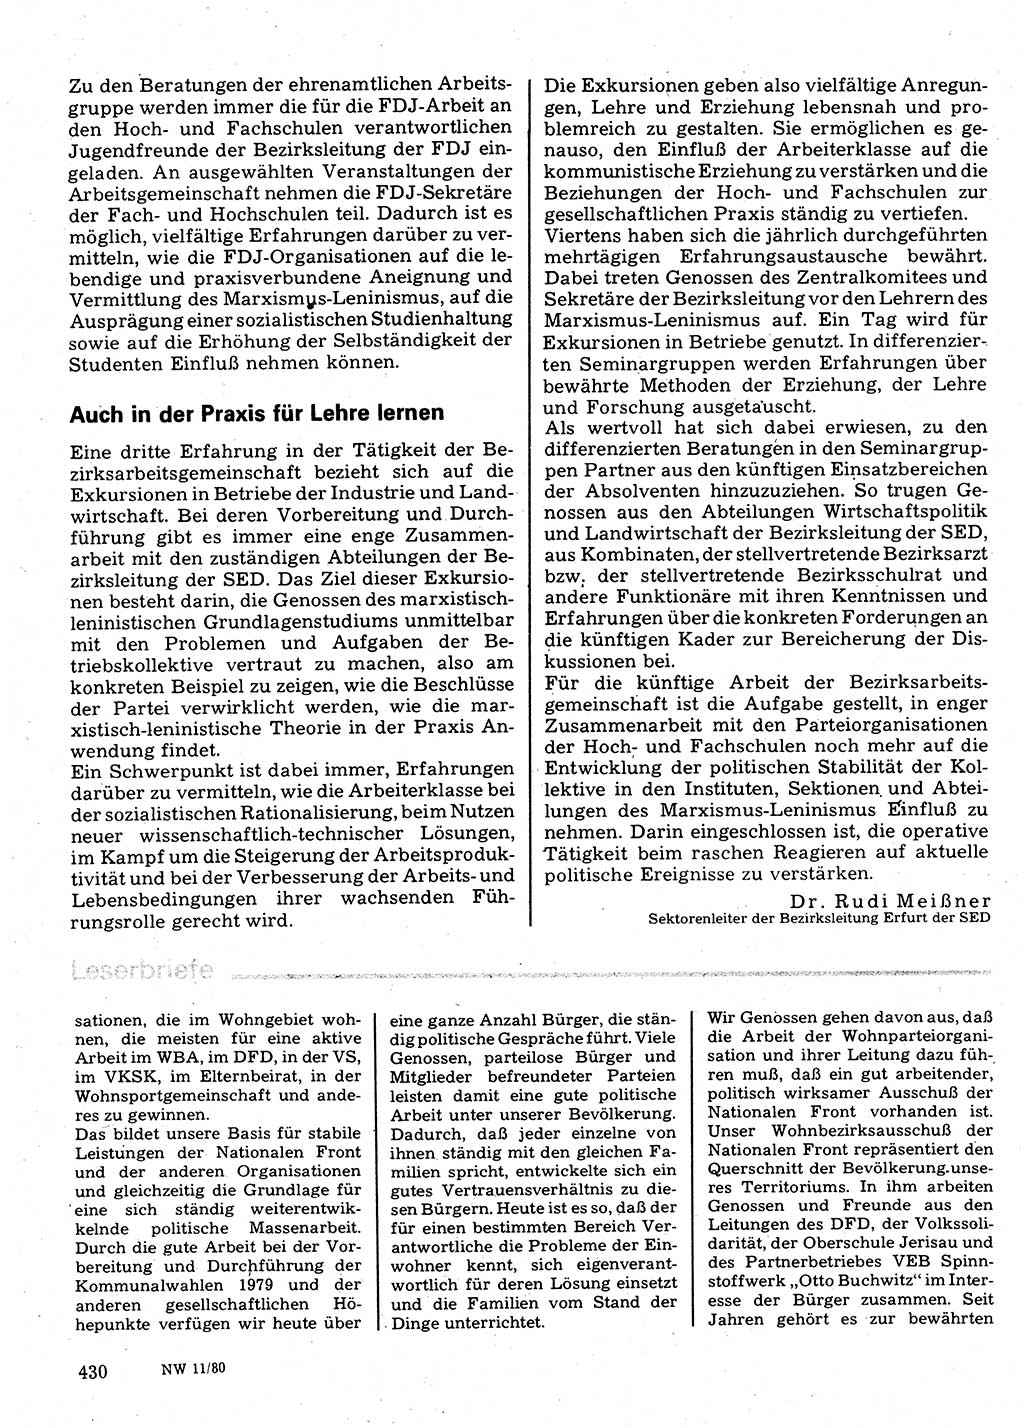 Neuer Weg (NW), Organ des Zentralkomitees (ZK) der SED (Sozialistische Einheitspartei Deutschlands) für Fragen des Parteilebens, 35. Jahrgang [Deutsche Demokratische Republik (DDR)] 1980, Seite 430 (NW ZK SED DDR 1980, S. 430)